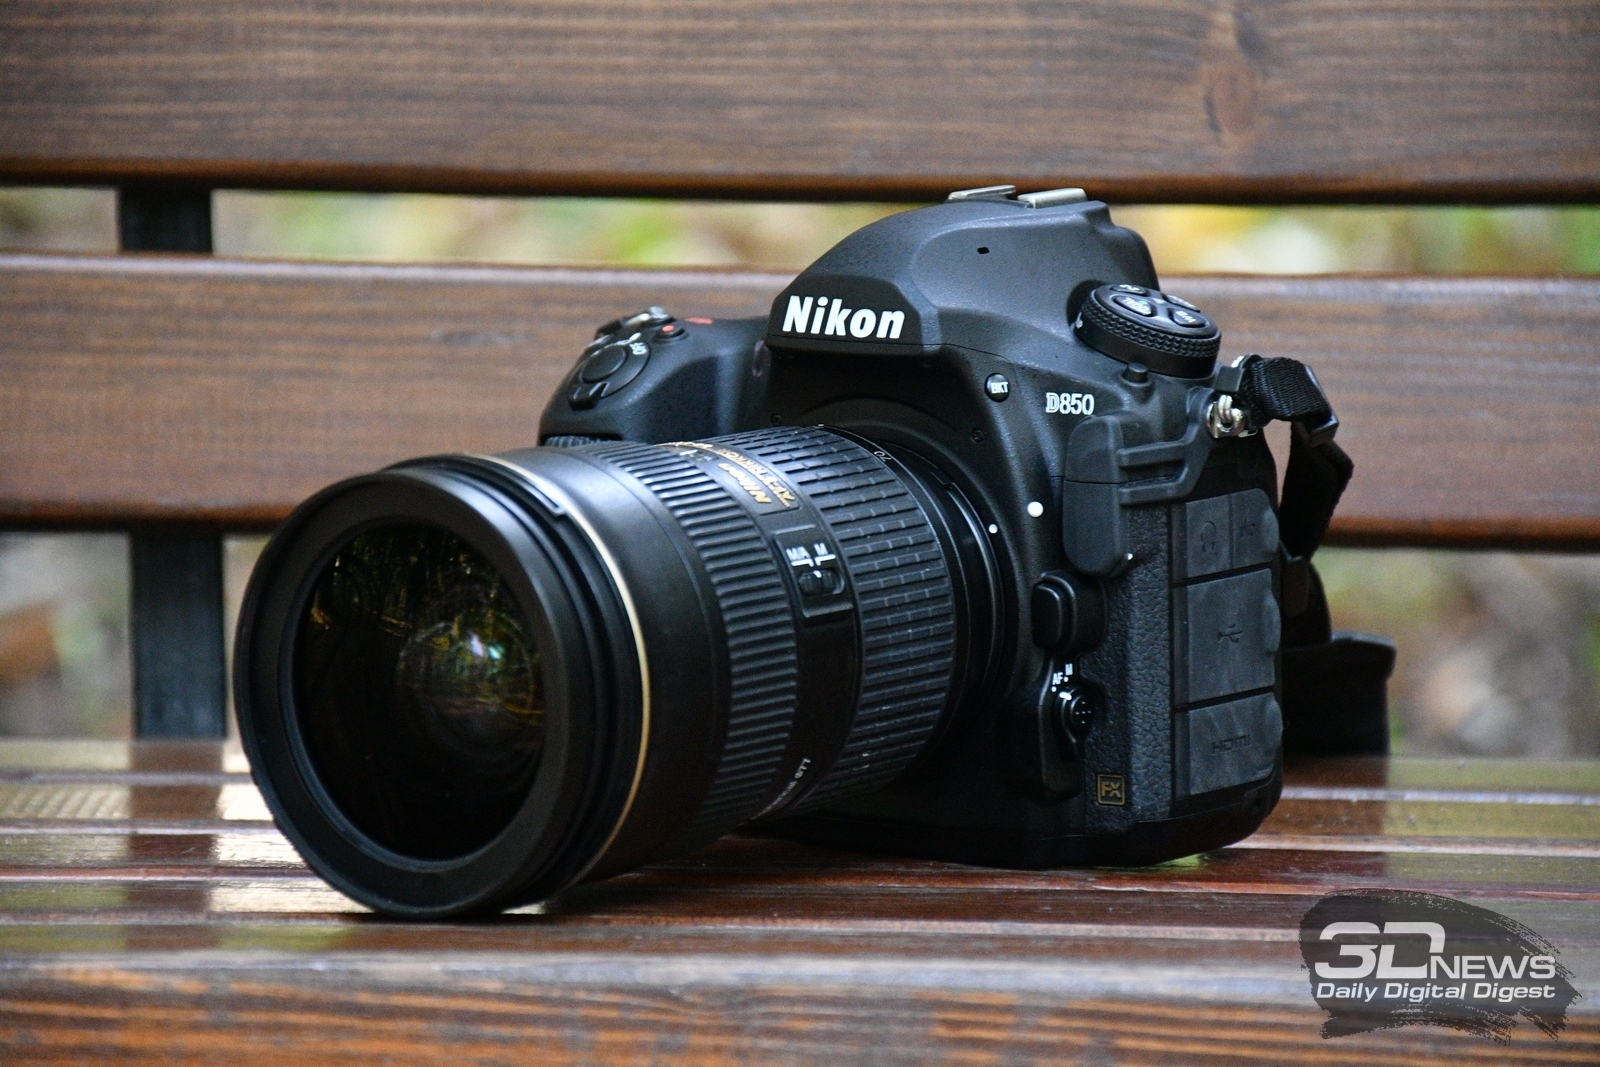    Nikon D850:  